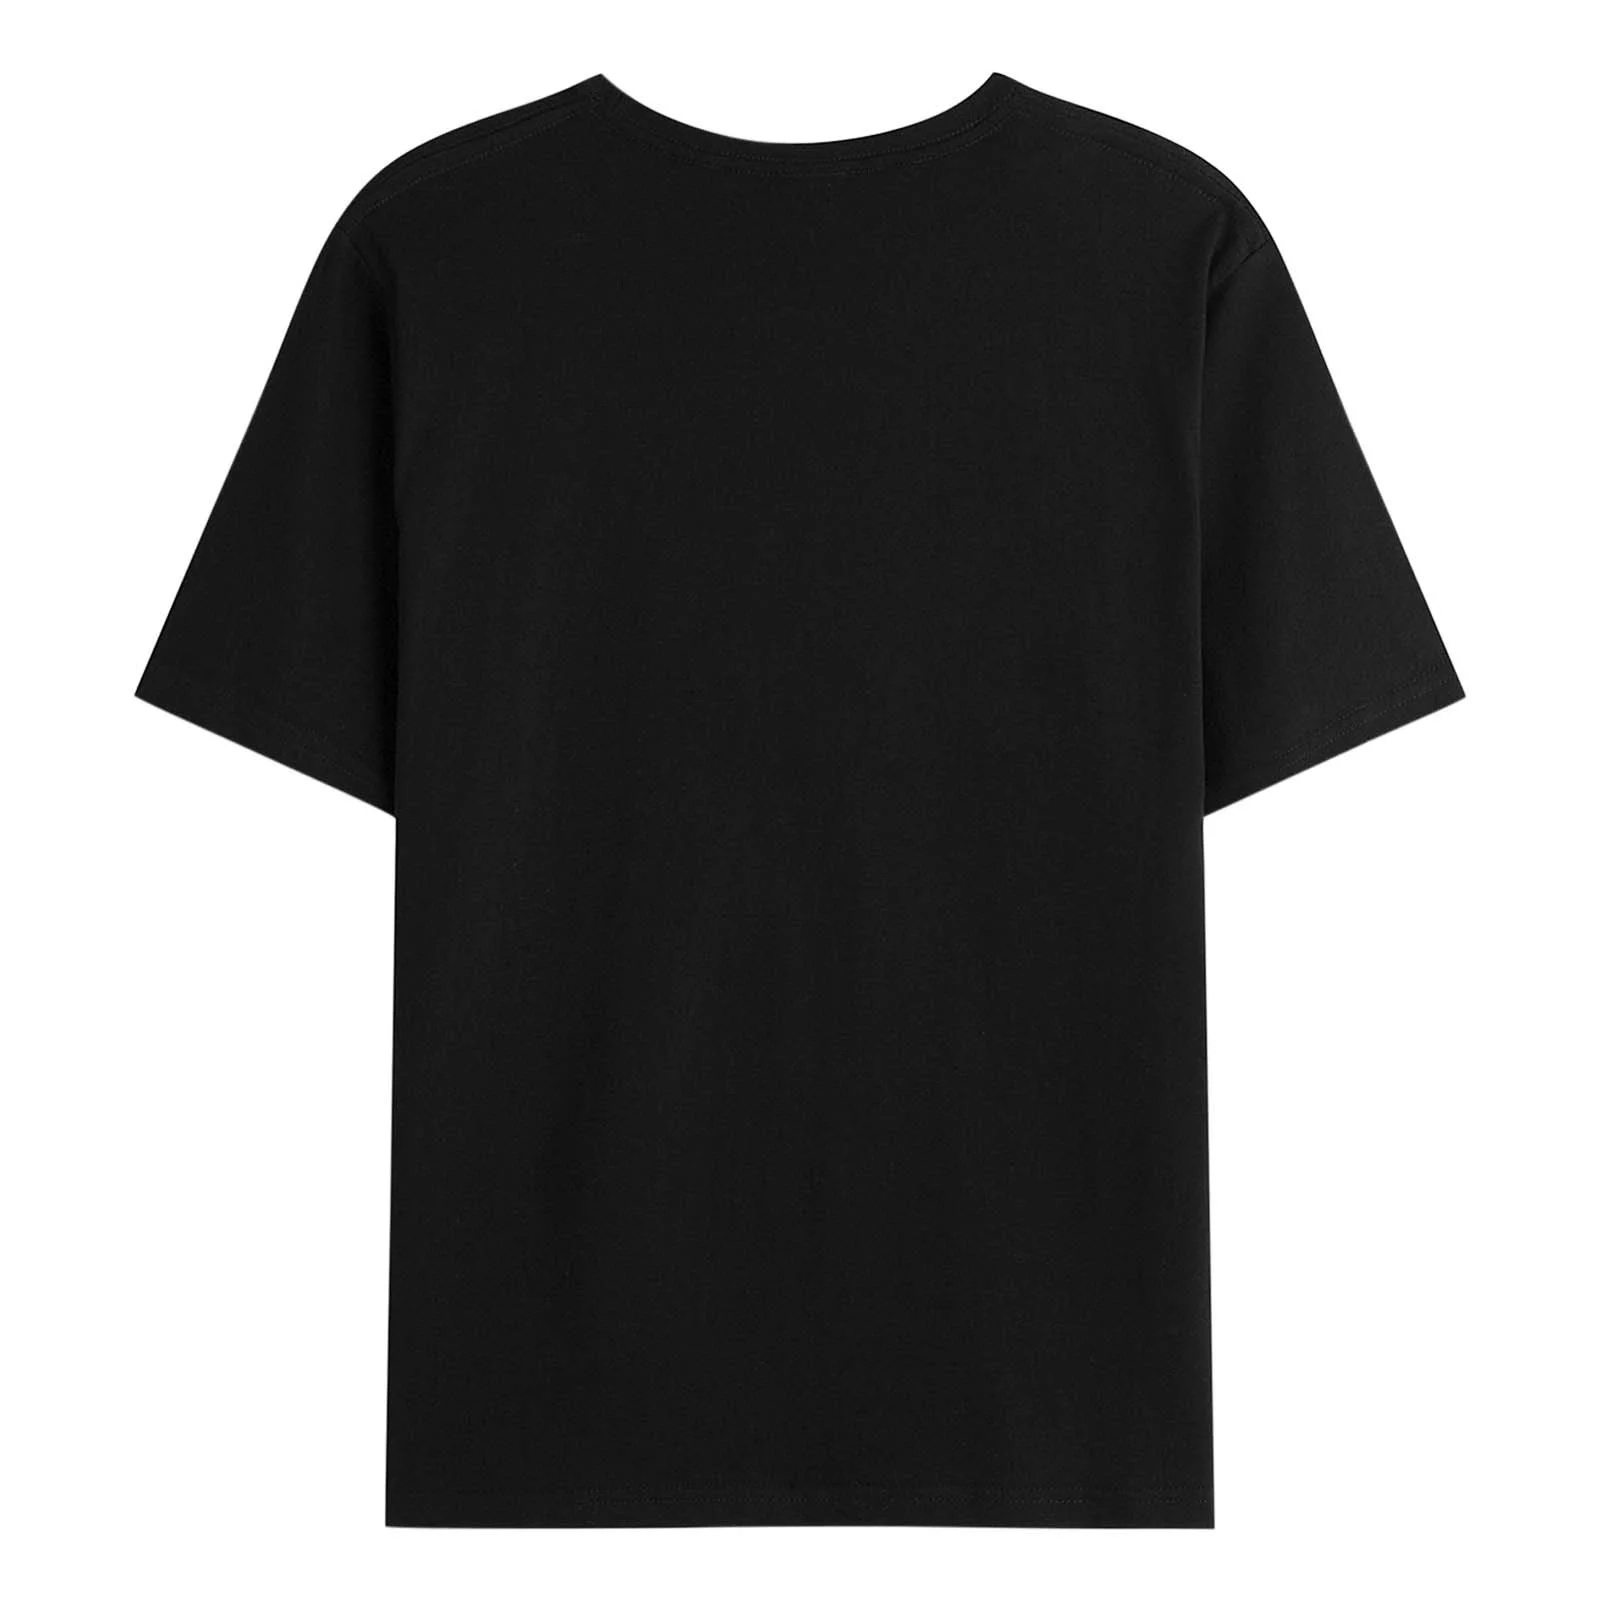 Women's Shirt South Carolina Basketball Fan Apparel Hoops Gear T-Shirt - image 2 of 4